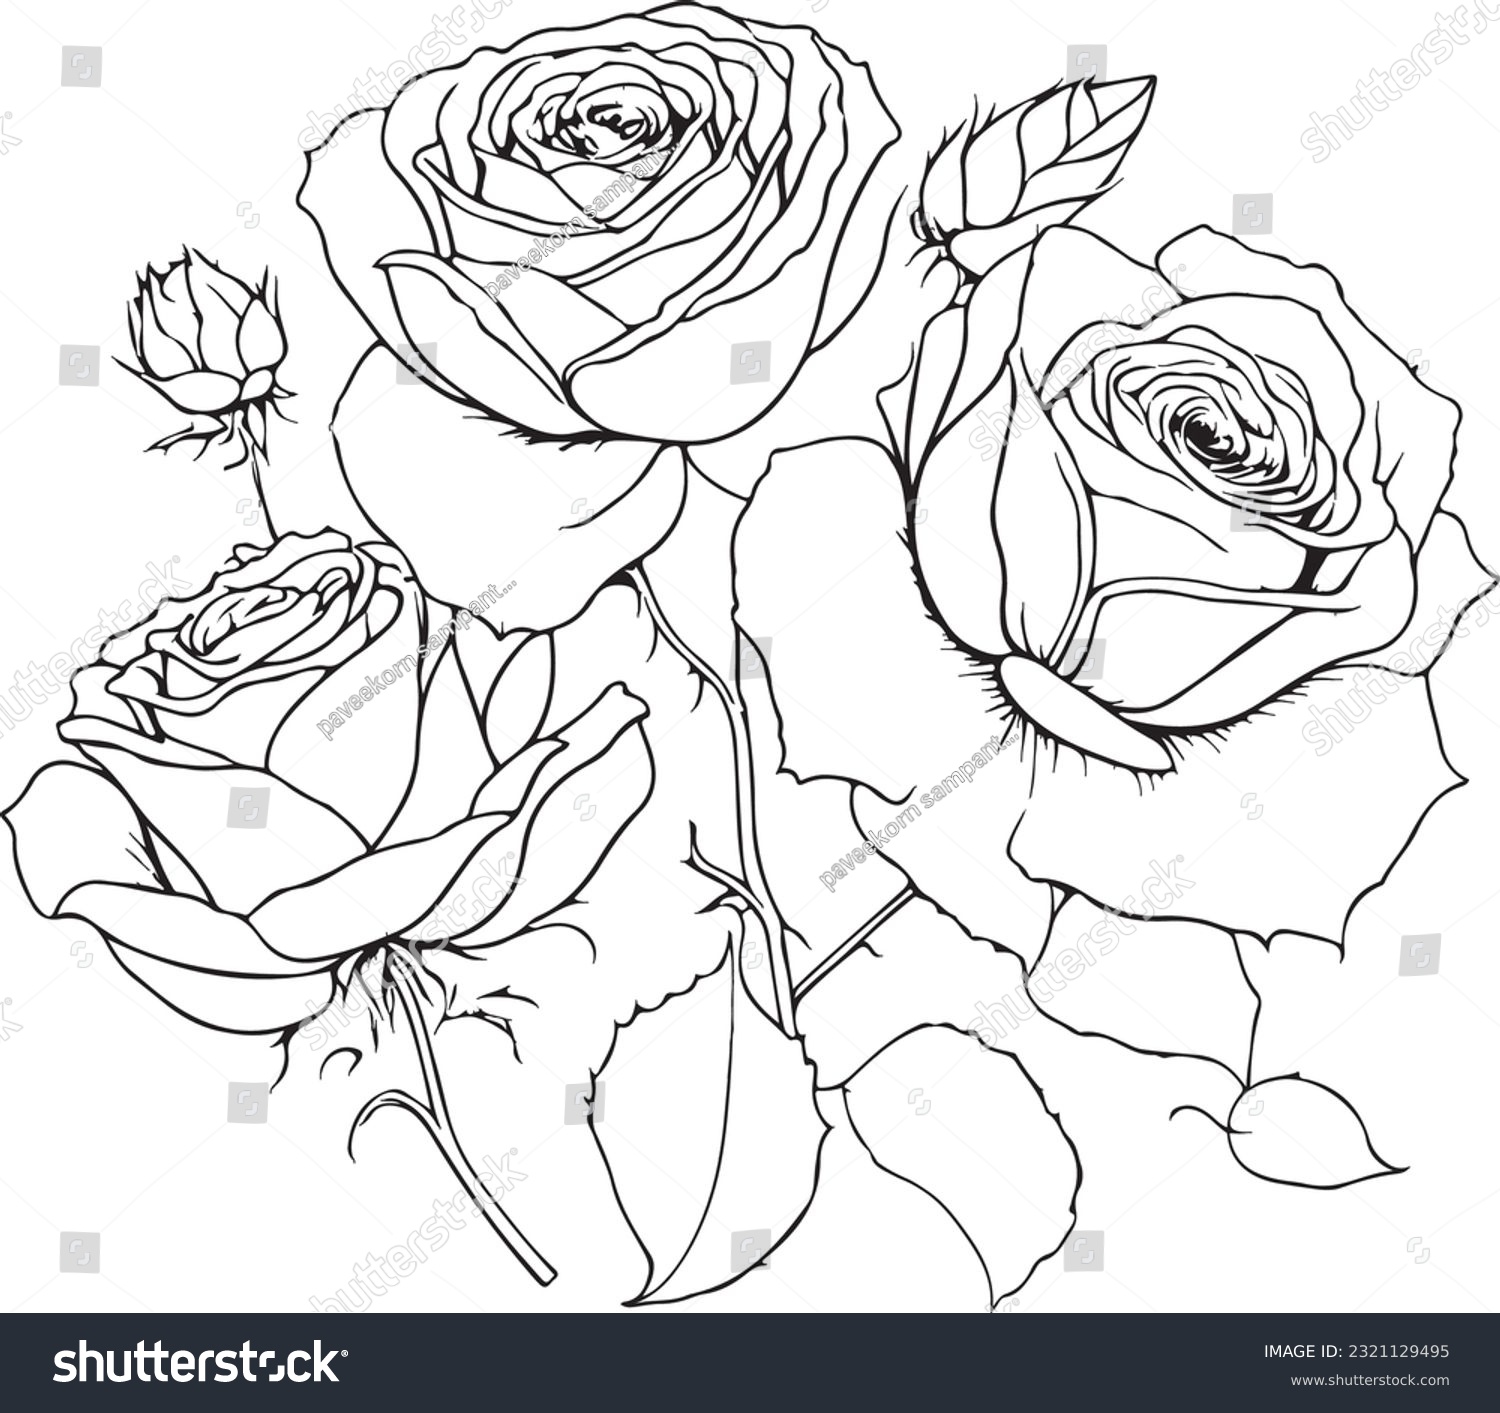 SVG of Rose Svg, Flower Download Svg Png Cut file, Rose Clipart download, wedding gift, Rose Flower svg, download, Cricut svg silhouette svg